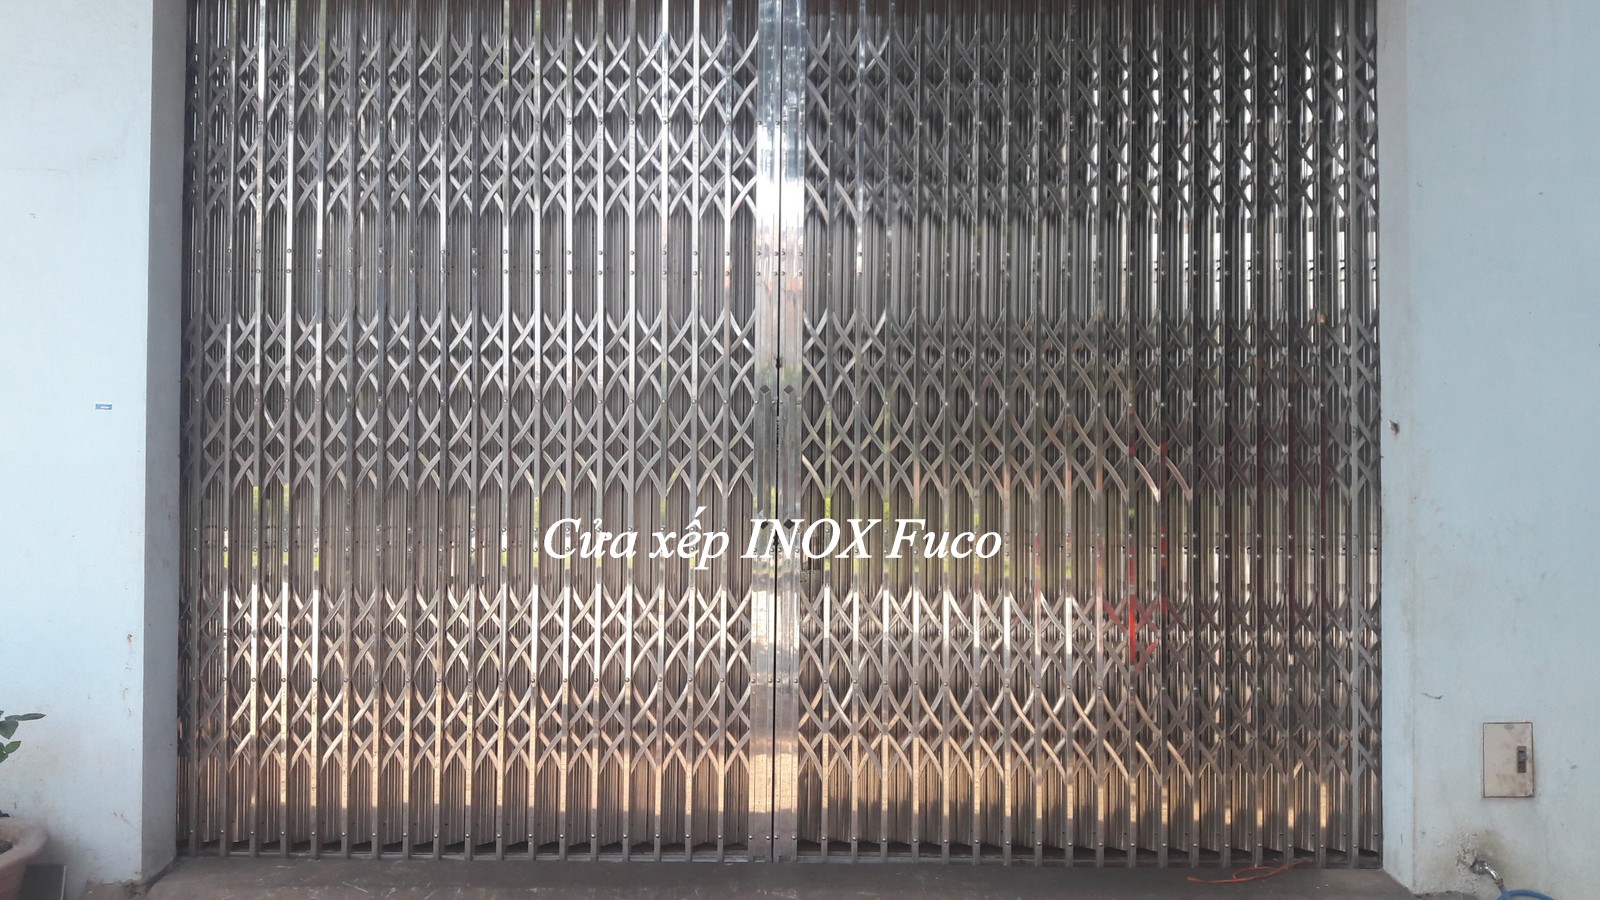 Sản xuất và lắp đặt cửa xếp INOX hộp 304 đến mọi công trình tại Hà Nội, Thái Nguyên và khu vực lân cận. Khách hàng ở các tỉnh xa vui lòng liên lạc